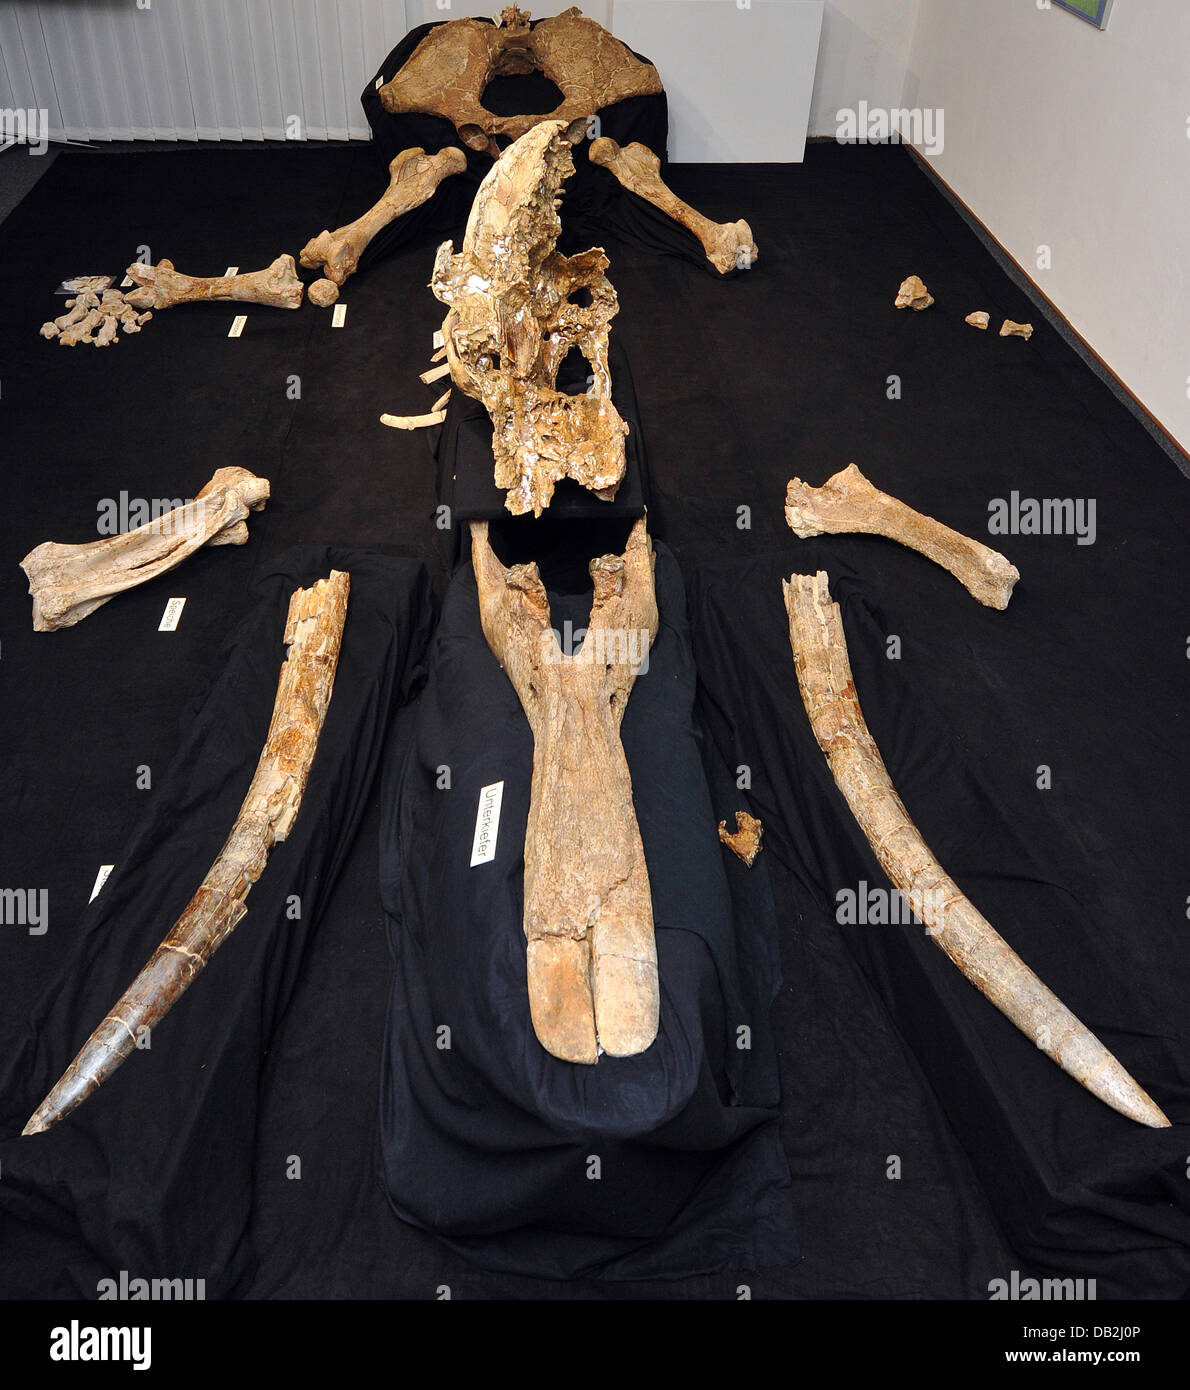 Das Skelett eines prähistorischen Elefanten ist das Museum of Natural Science in Augsburg, Deutschland, 13. September 2011 zu sehen. Das Skelett wurde im Jahr 2003 in einer Kiesgrube gefunden. Das Museum präsentiert die wiederhergestellten Knochen des 15 Millionen Jahre alte Elefanten. Foto: STEFAN PUCHNER Stockfoto